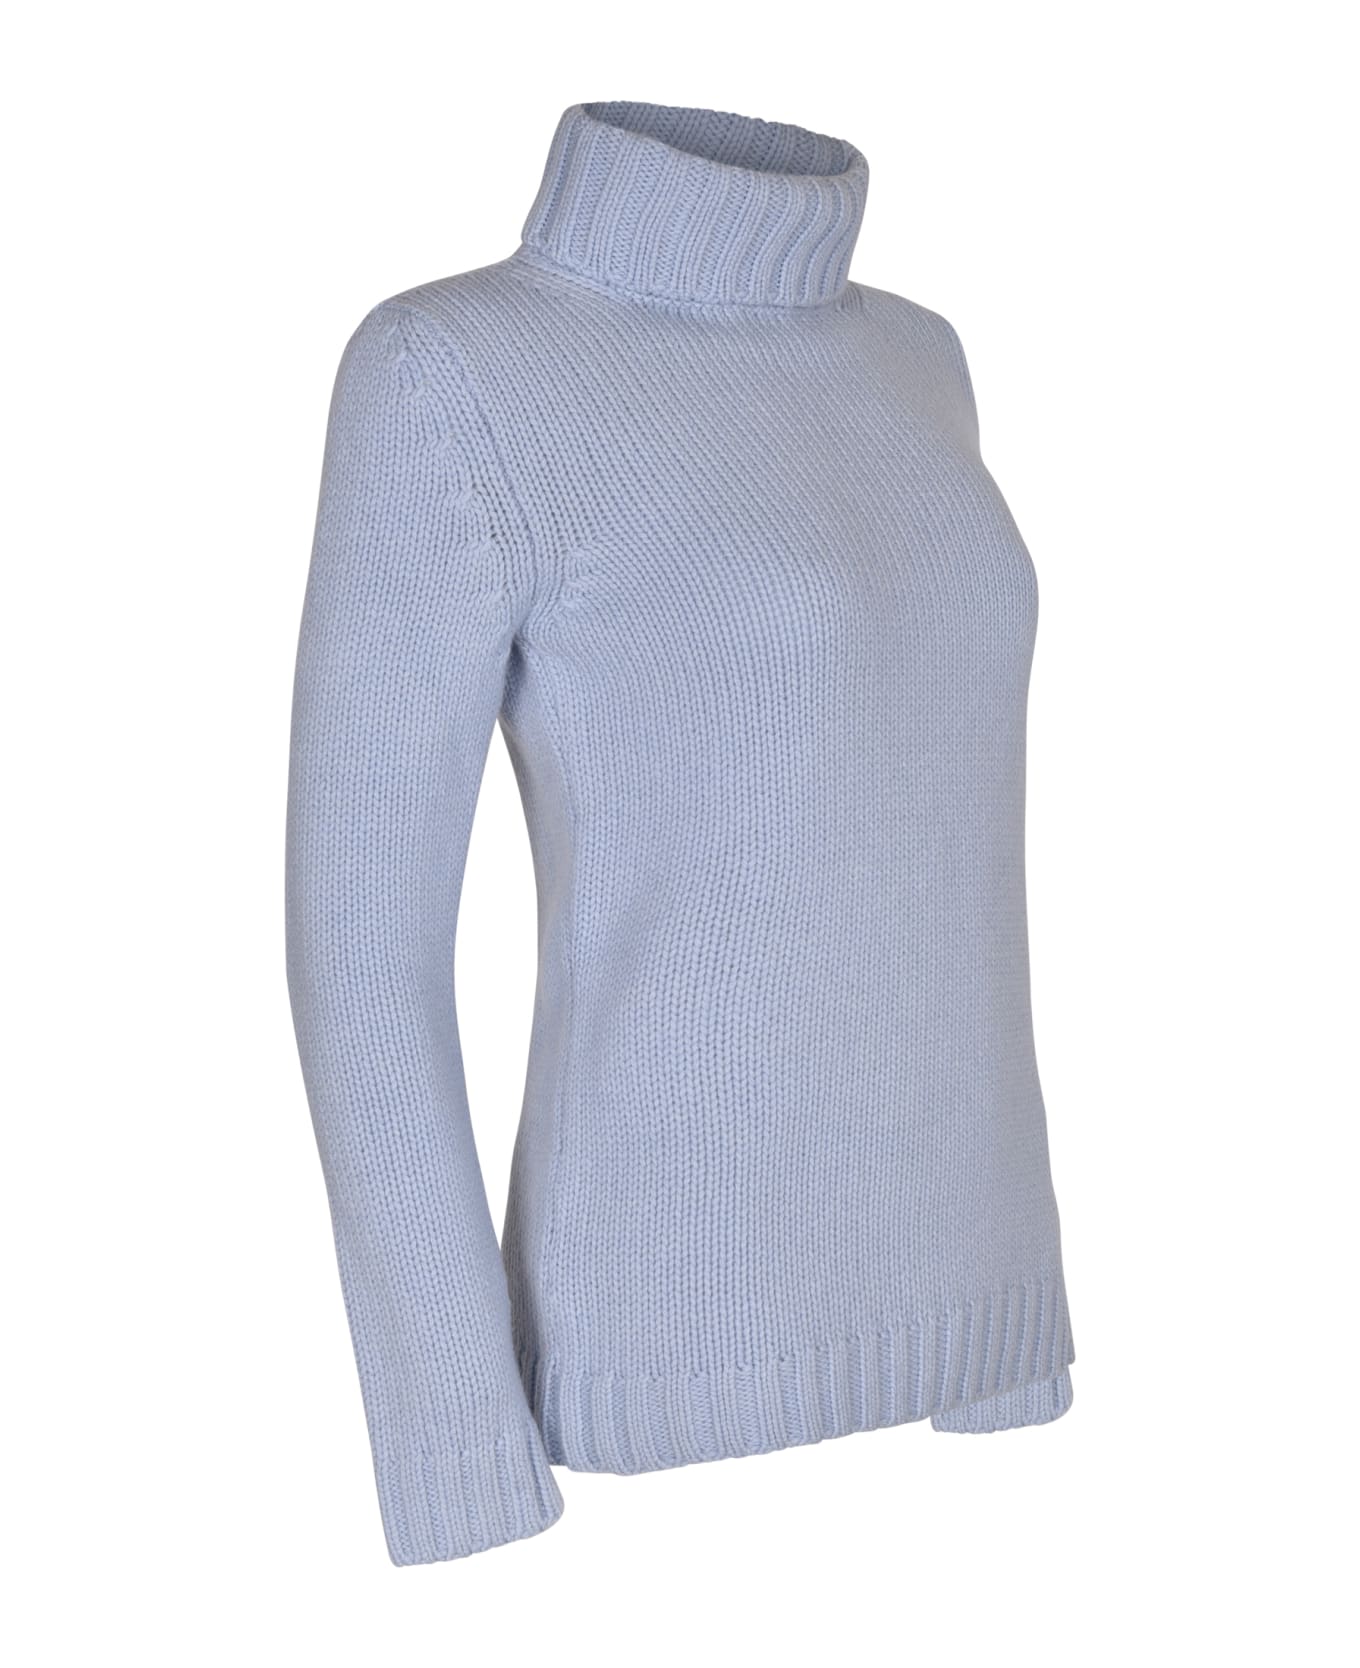 Base Rib Knit Plain Turtleneck Pullover - Light Blue